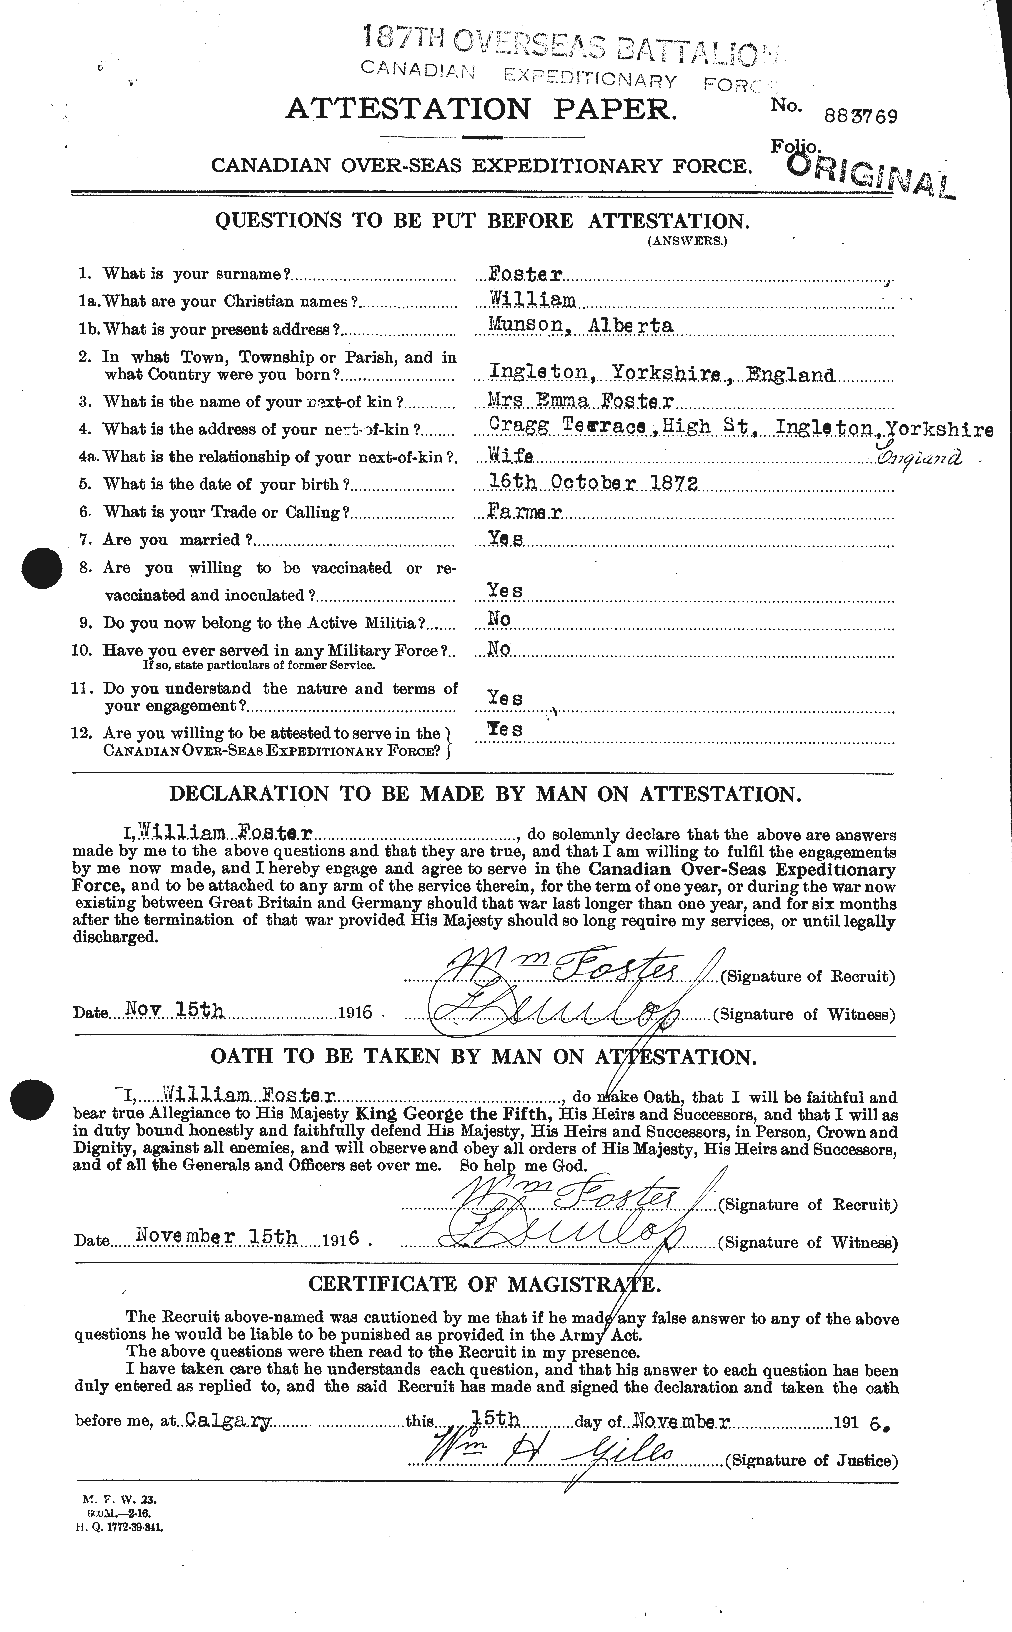 Dossiers du Personnel de la Première Guerre mondiale - CEC 328711a